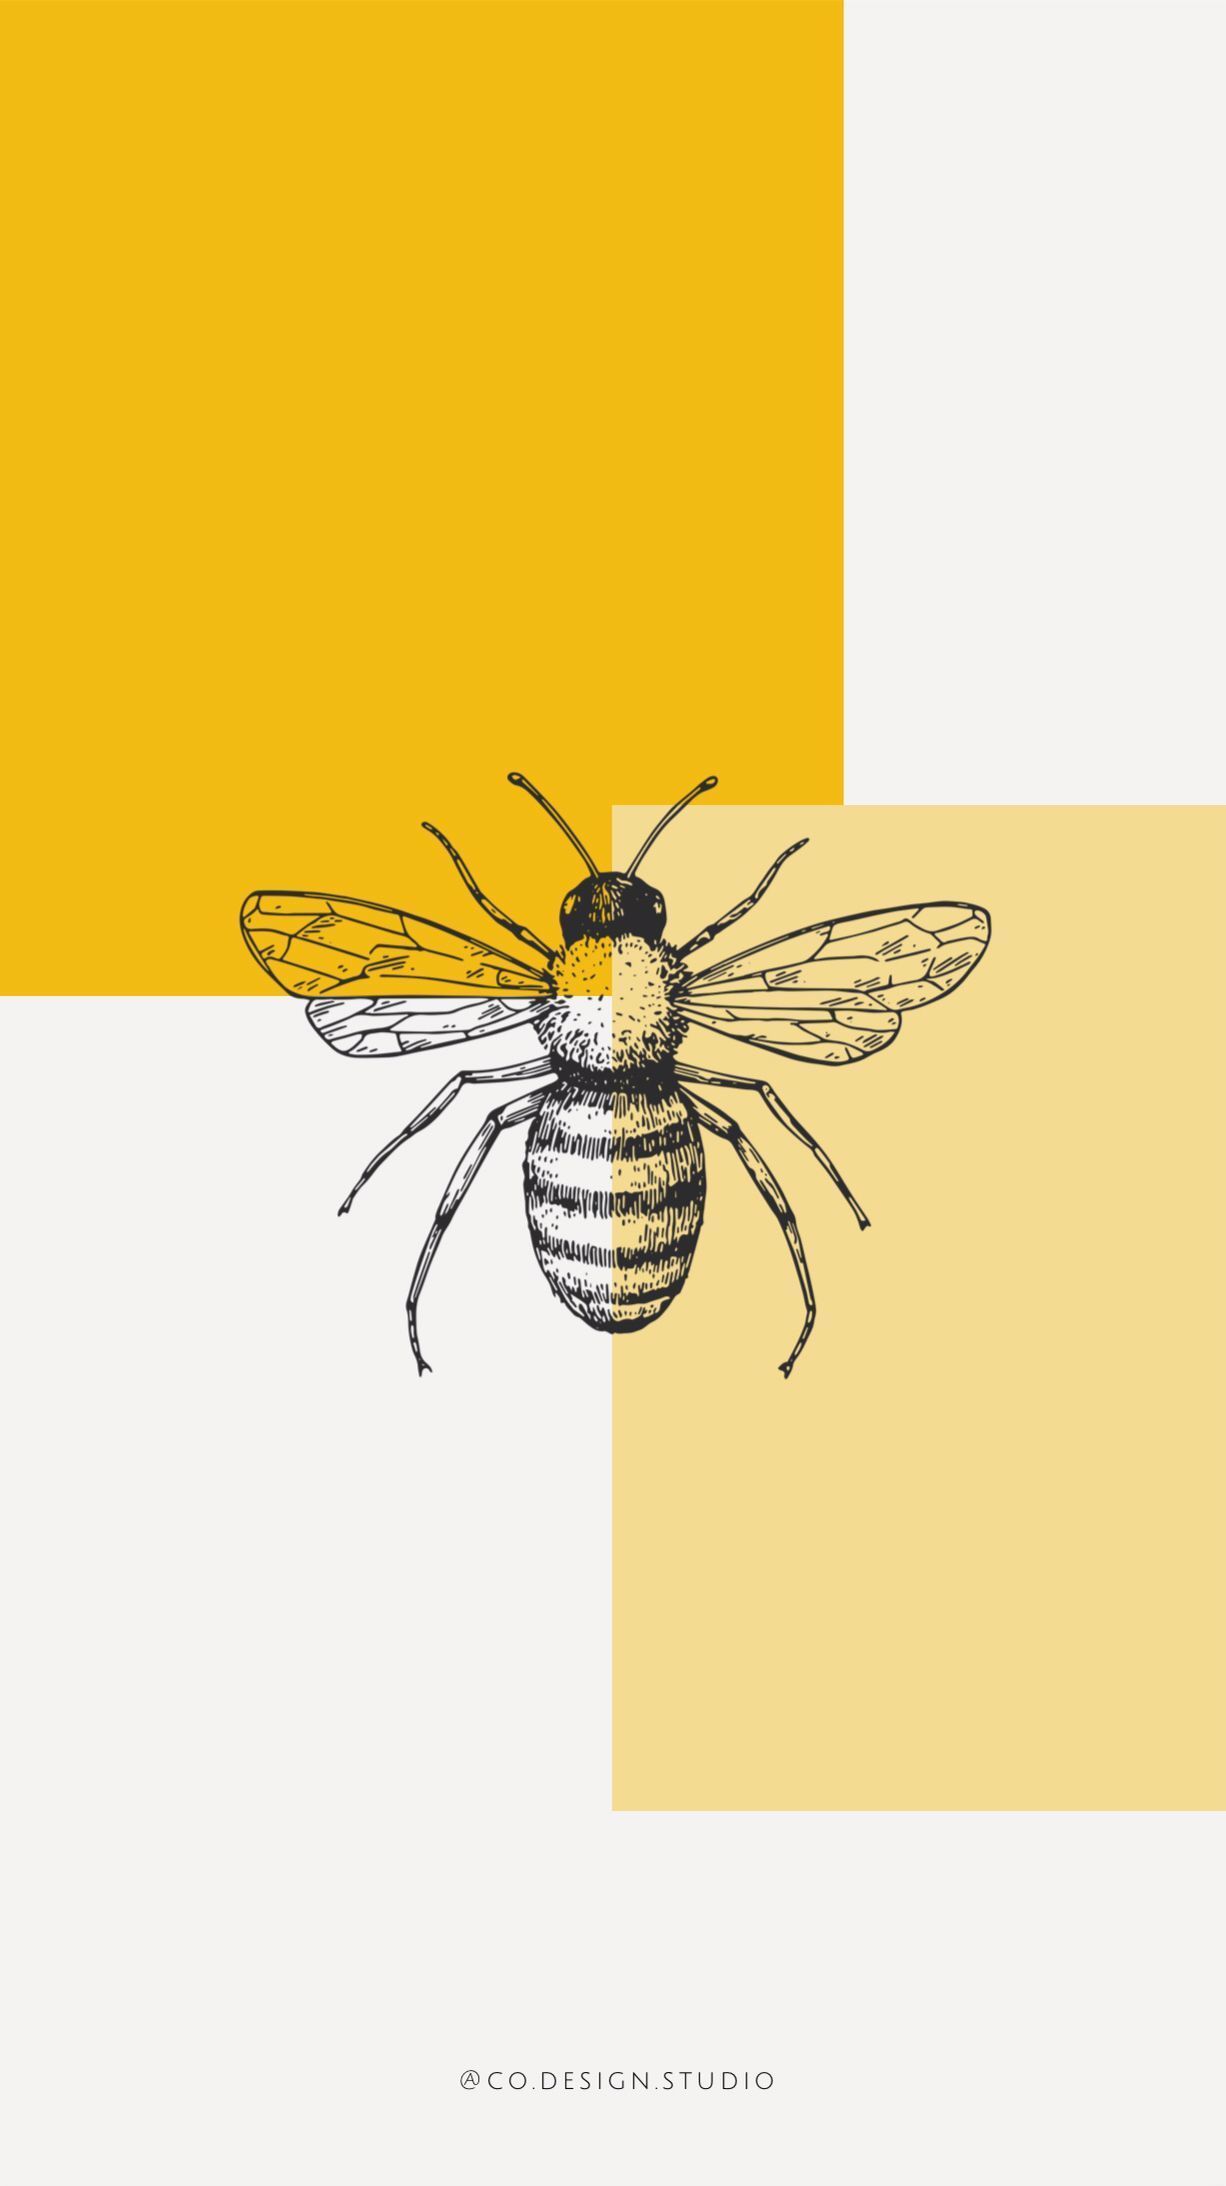 wallpaper #iphone #graphicdesign #yellow #mustard #bee #honey. Yellow wallpaper, Yellow aesthetic, Cute wallpaper